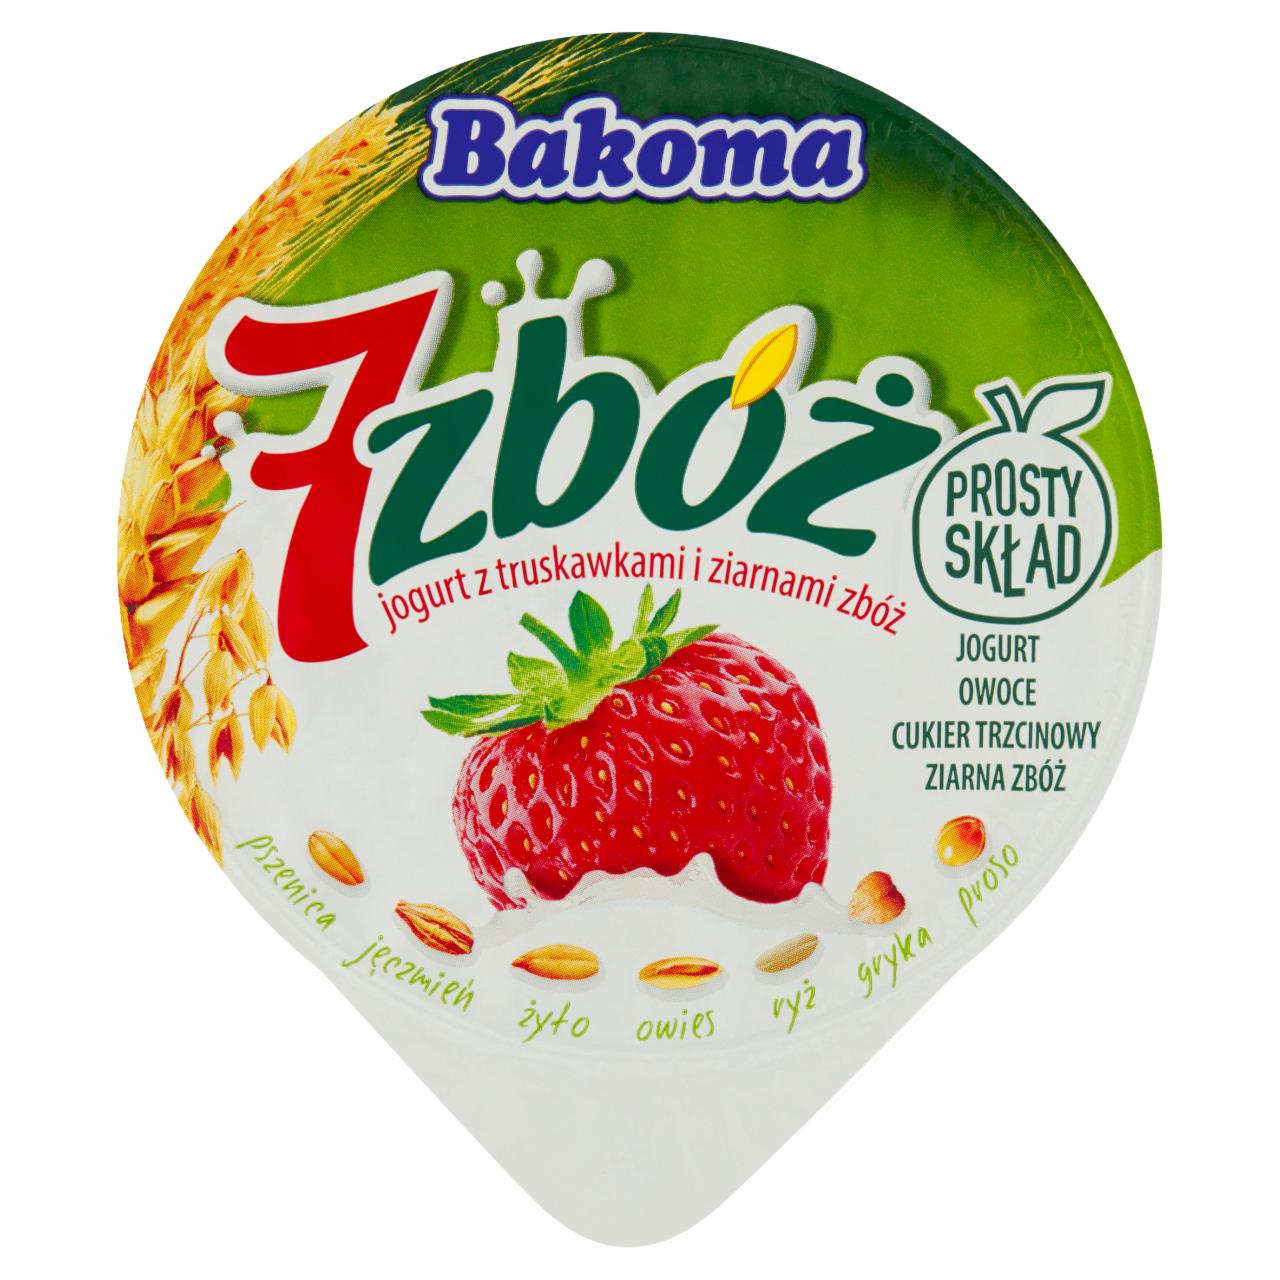 Zdjęcia - Bakoma 7 zbóż Jogurt z truskawkami i ziarnami zbóż 300 g